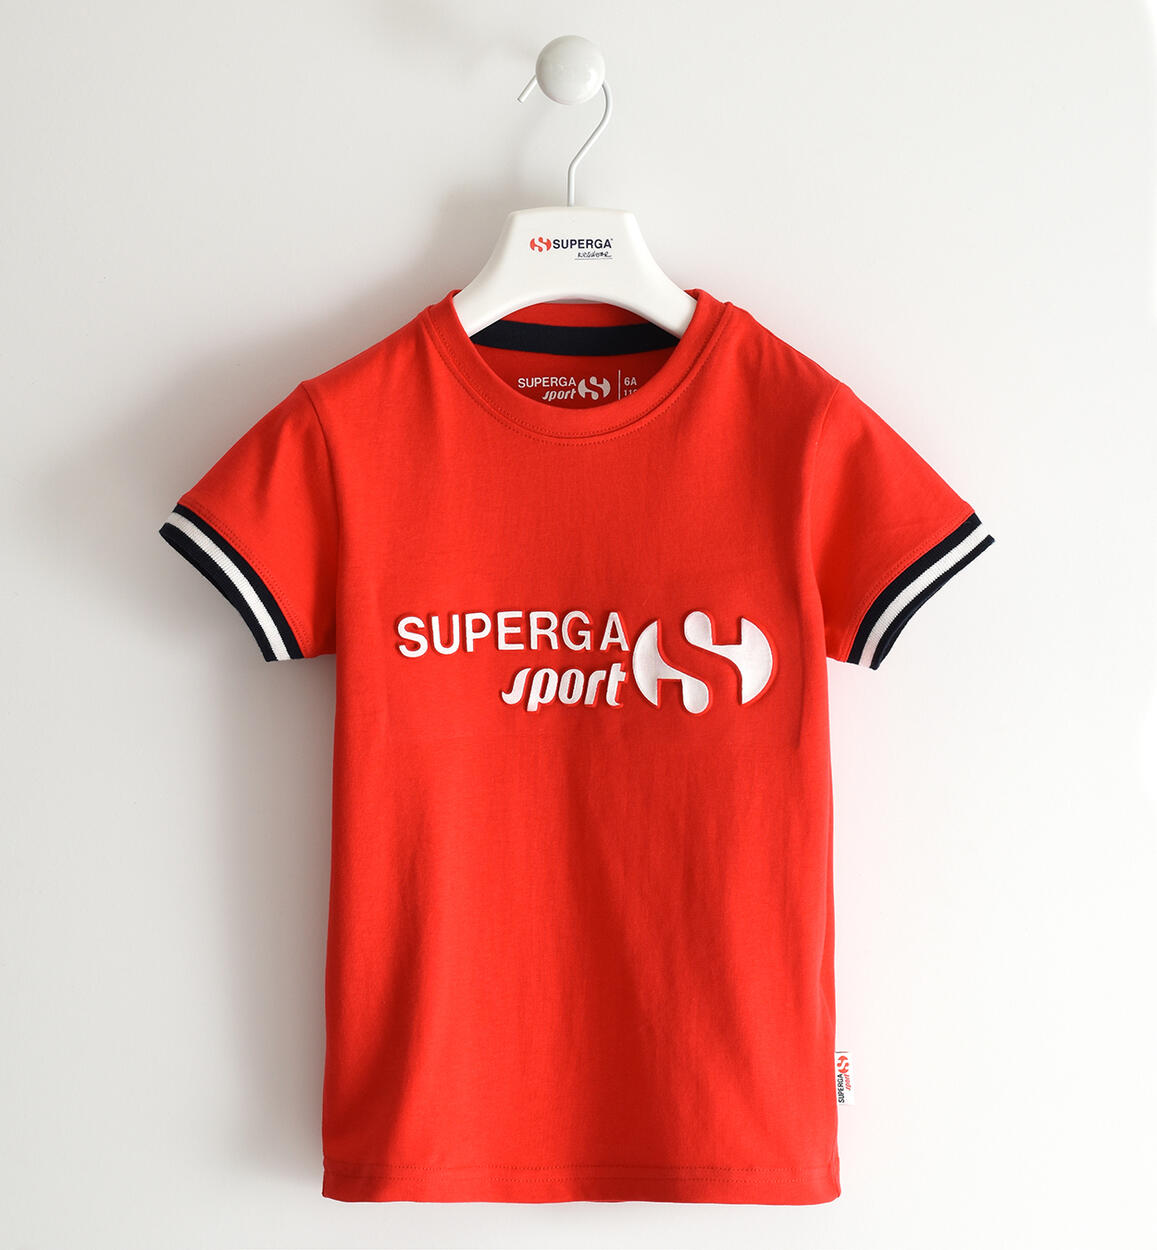 Superga T-shirt per bambino ROSSO SUPERGA